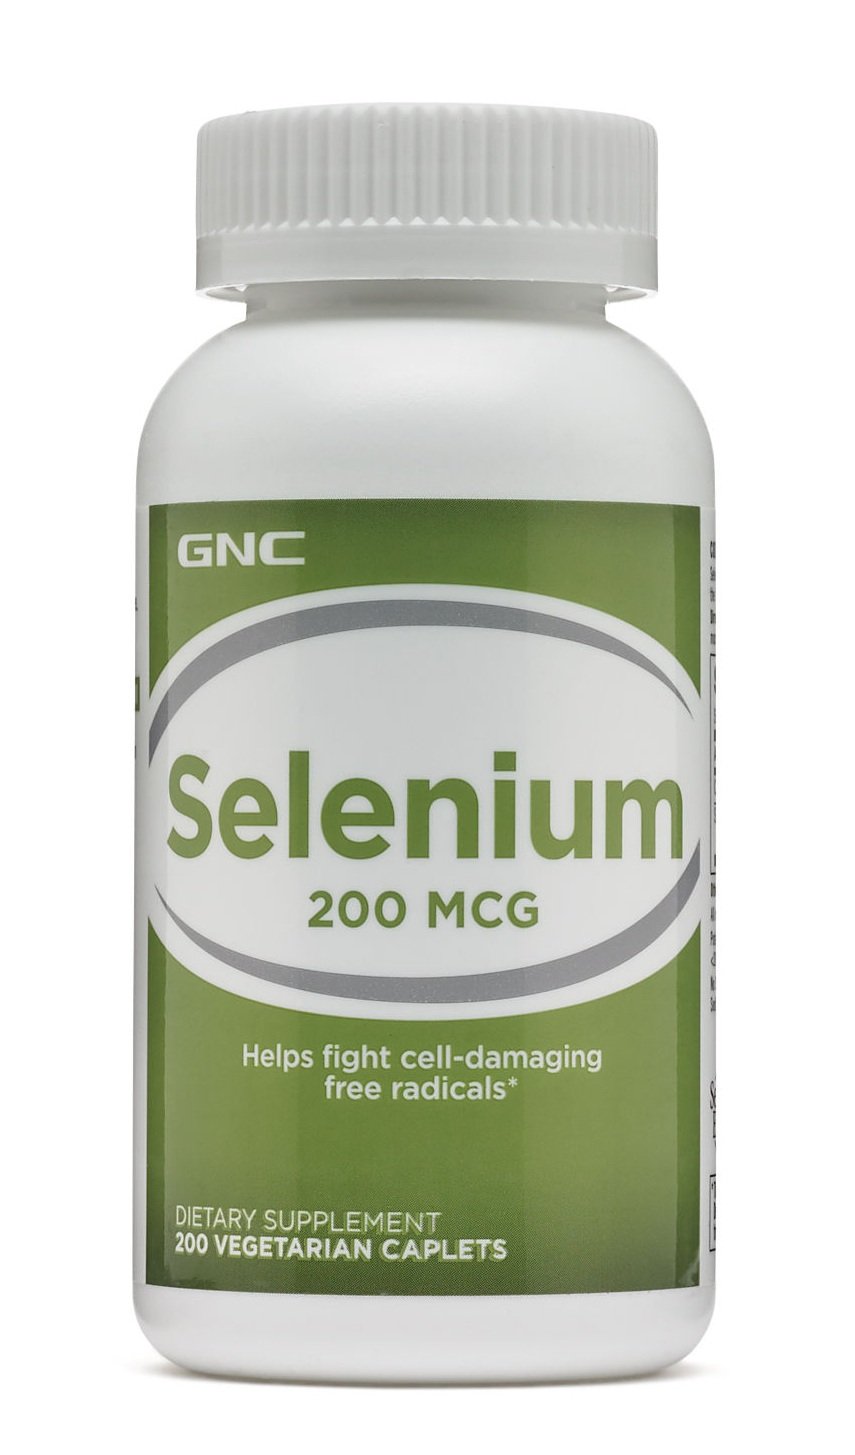 Витамины и минералы GNC Selenium 200 mcg, 200 таблеток,  мл, GNC. Витамины и минералы. Поддержание здоровья Укрепление иммунитета 